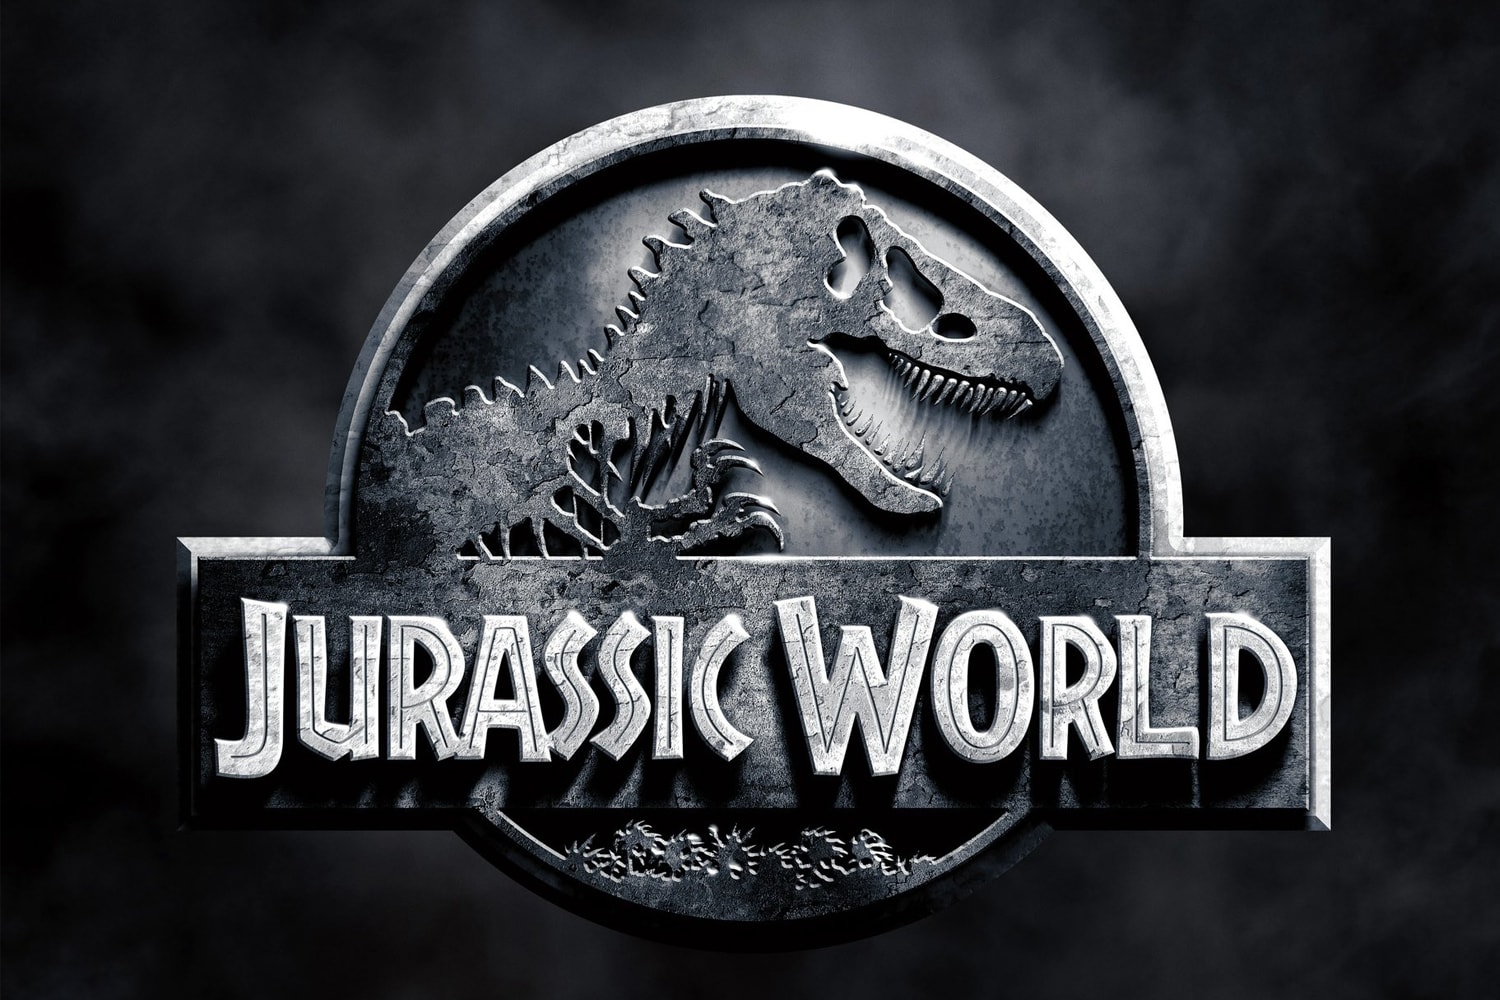 消息称《侏罗纪世界 Jurassic World》全新续集正在制作中